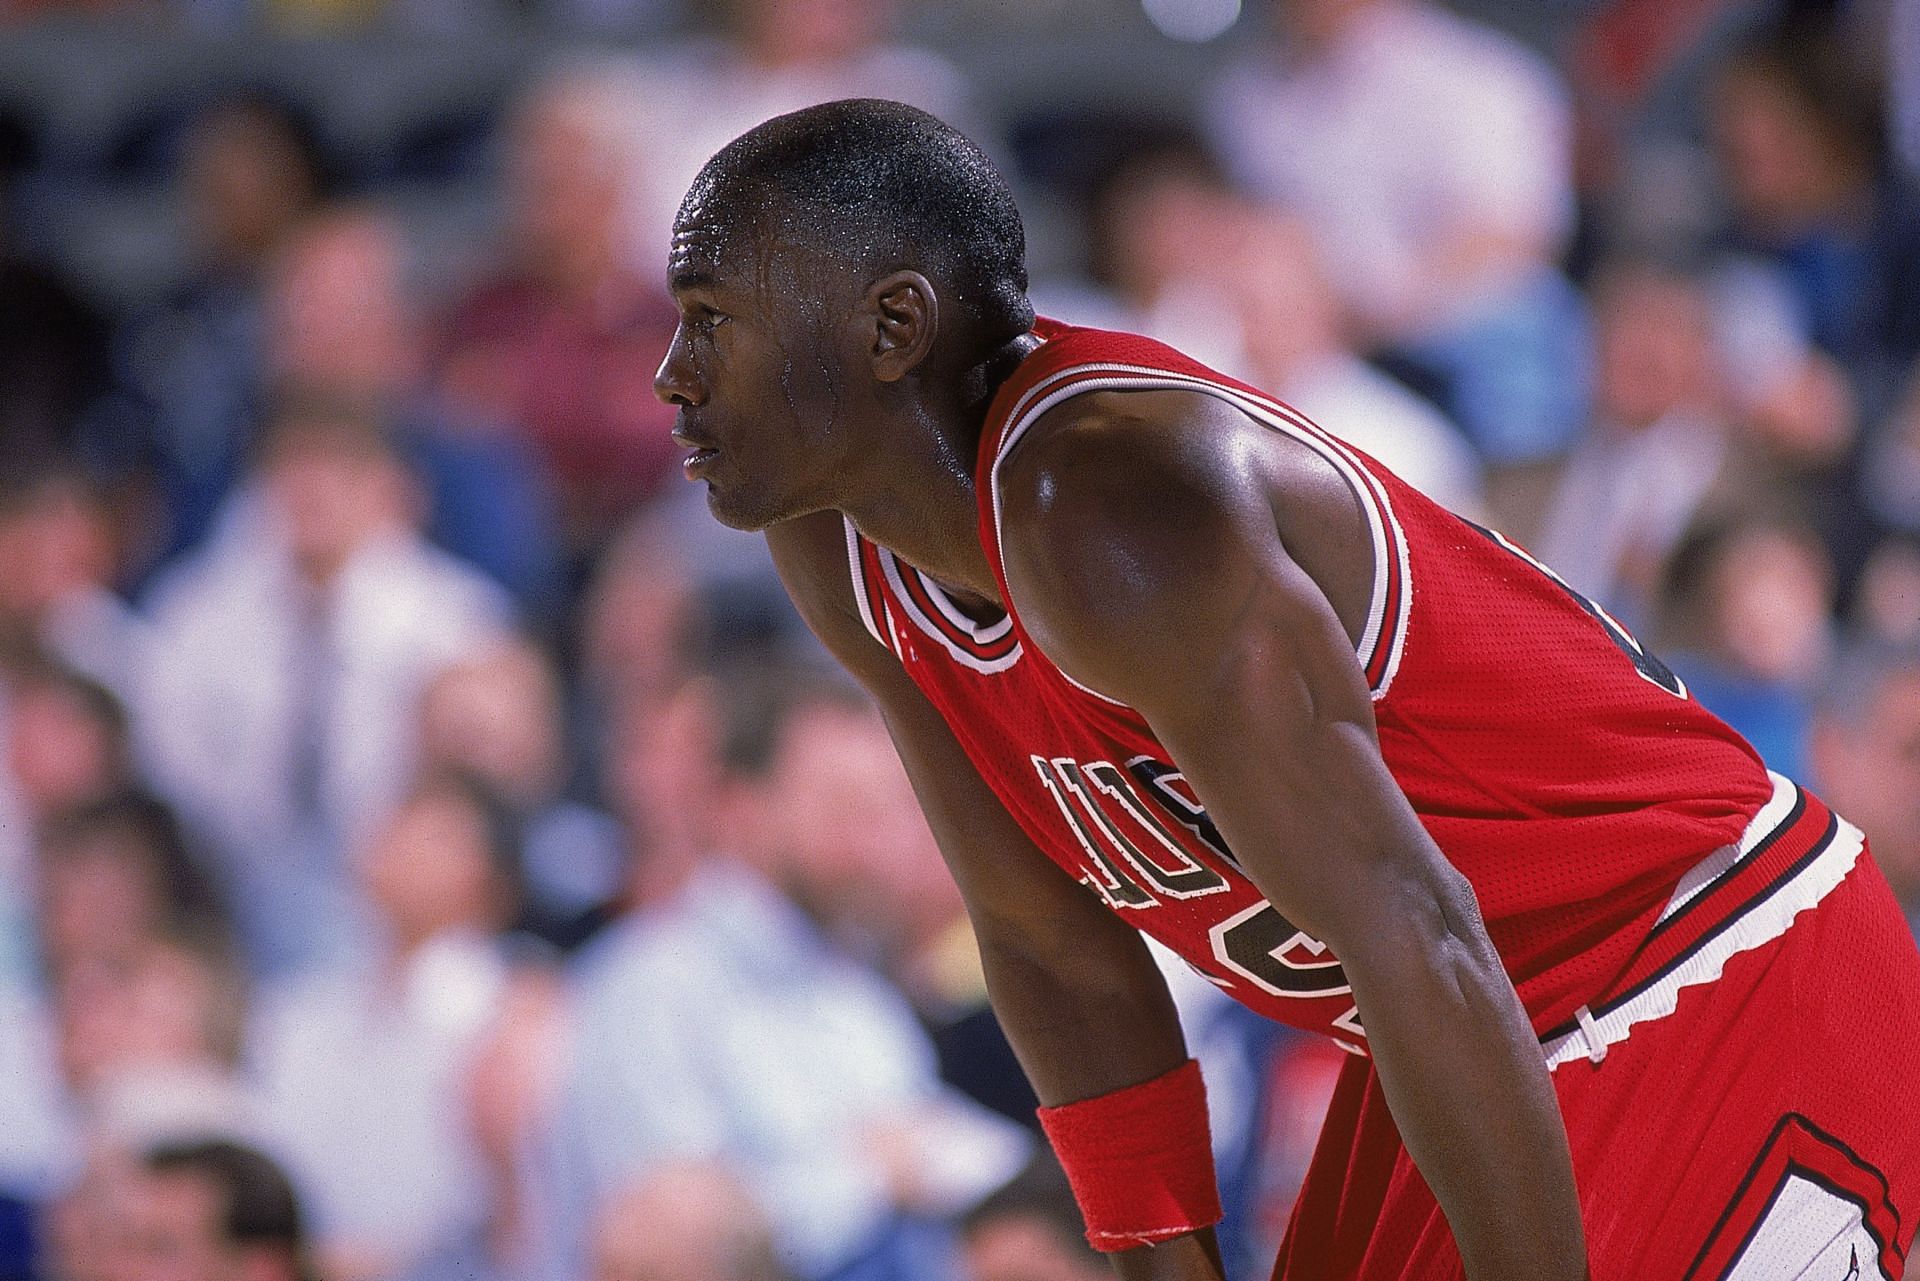 Michael Jordan in 1988 for the Chicago Bulls